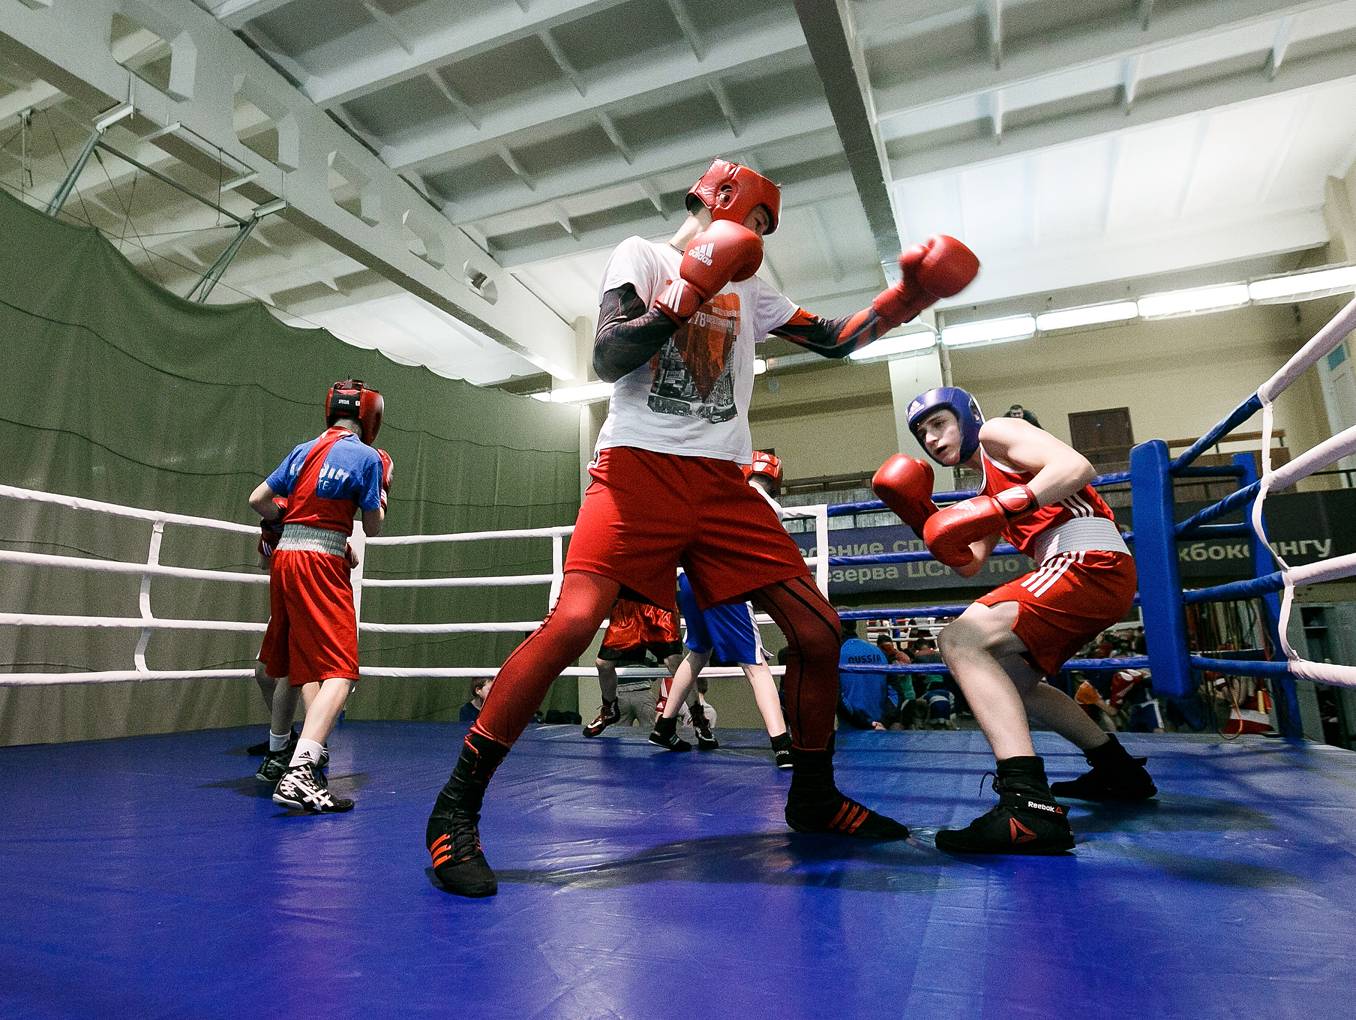 Плюсы и минусы бокса для взрослых, девушек и детей, стоит ли заниматься боксом?